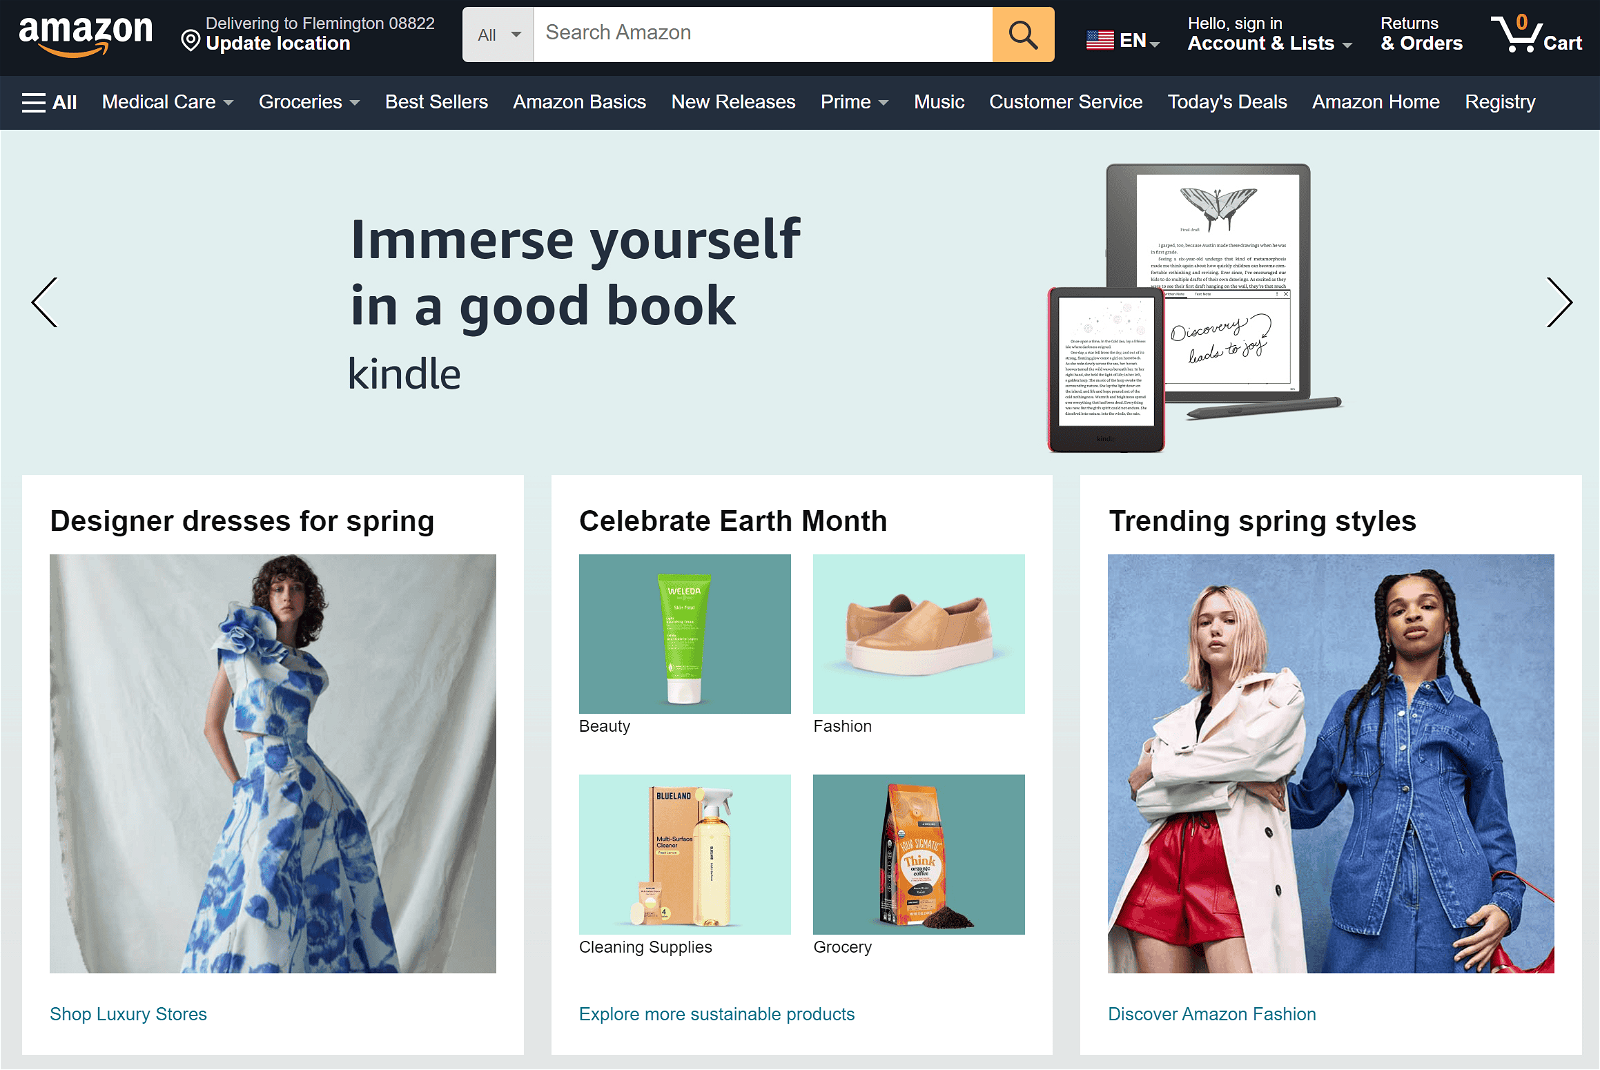 Amazon Associates Homepage